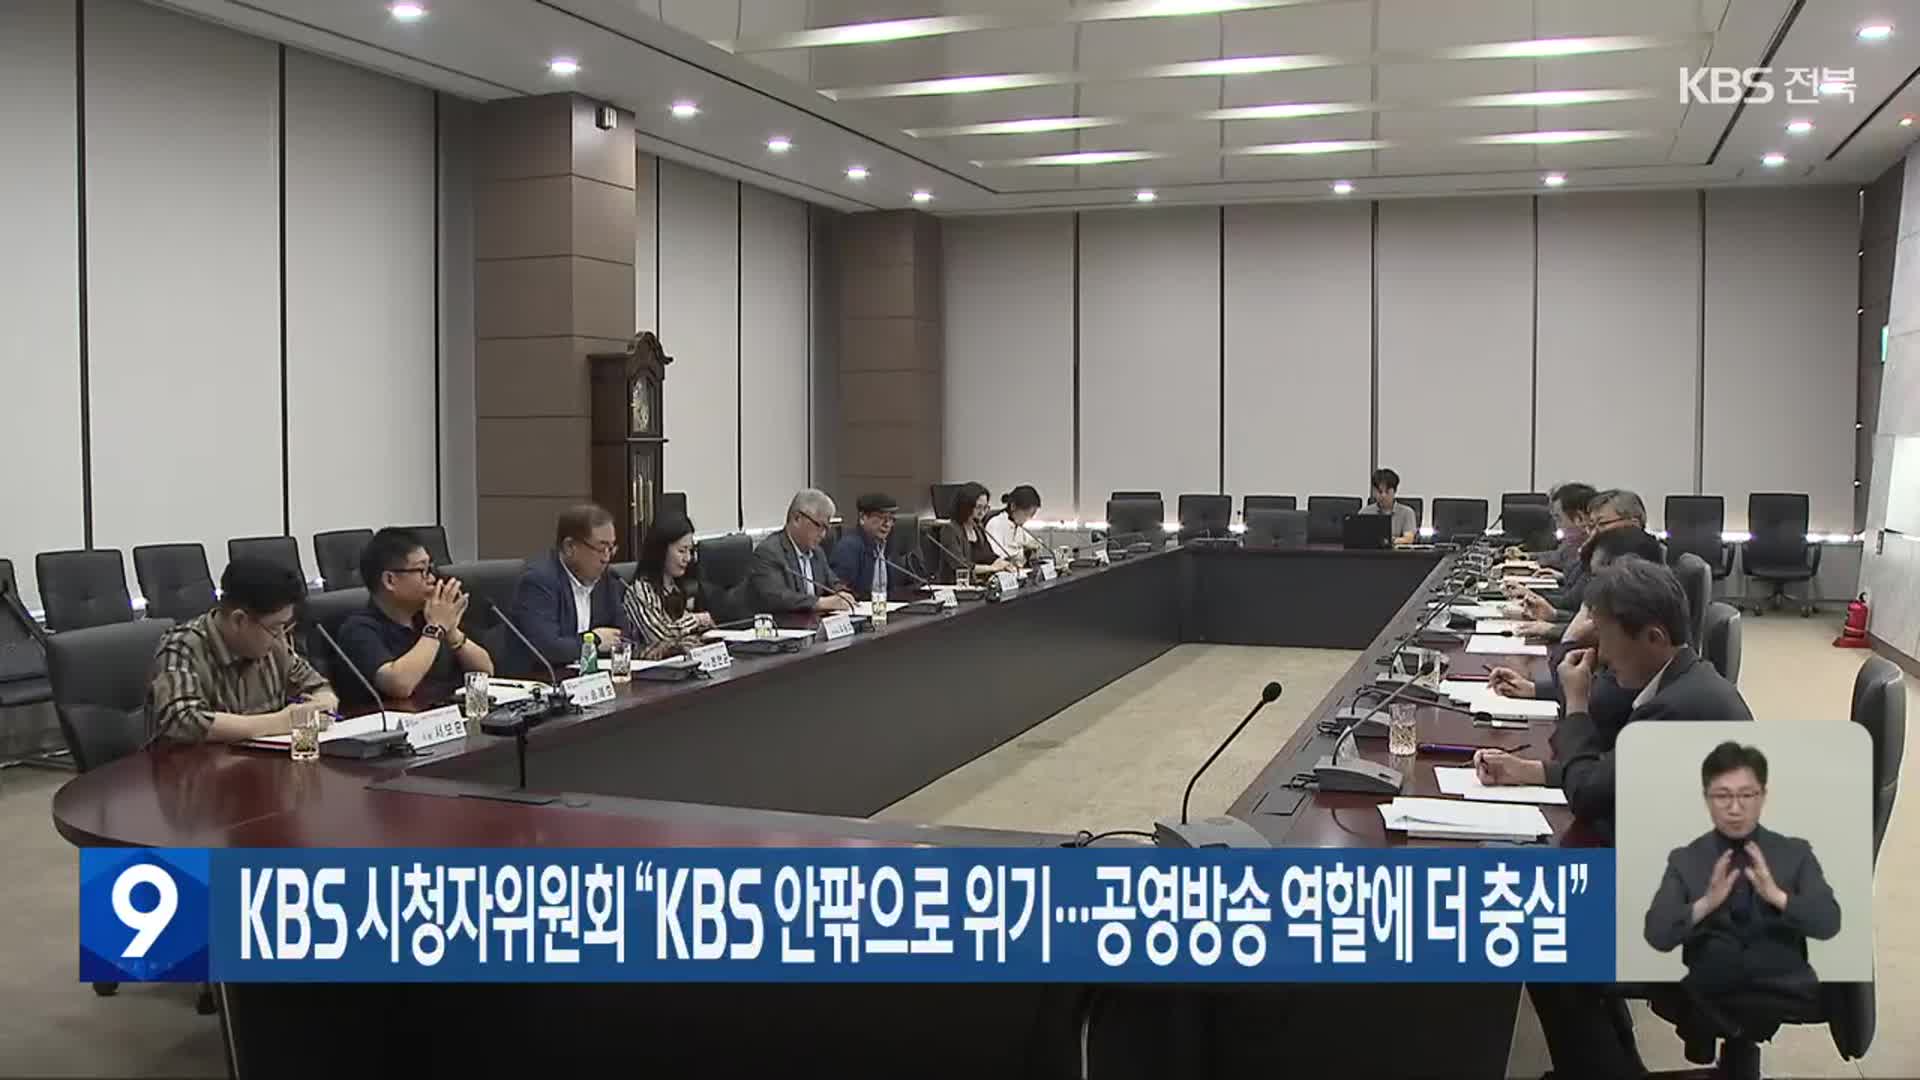 KBS 시청자위원회 “KBS 안팎으로 위기…공영방송 역할에 더 충실”